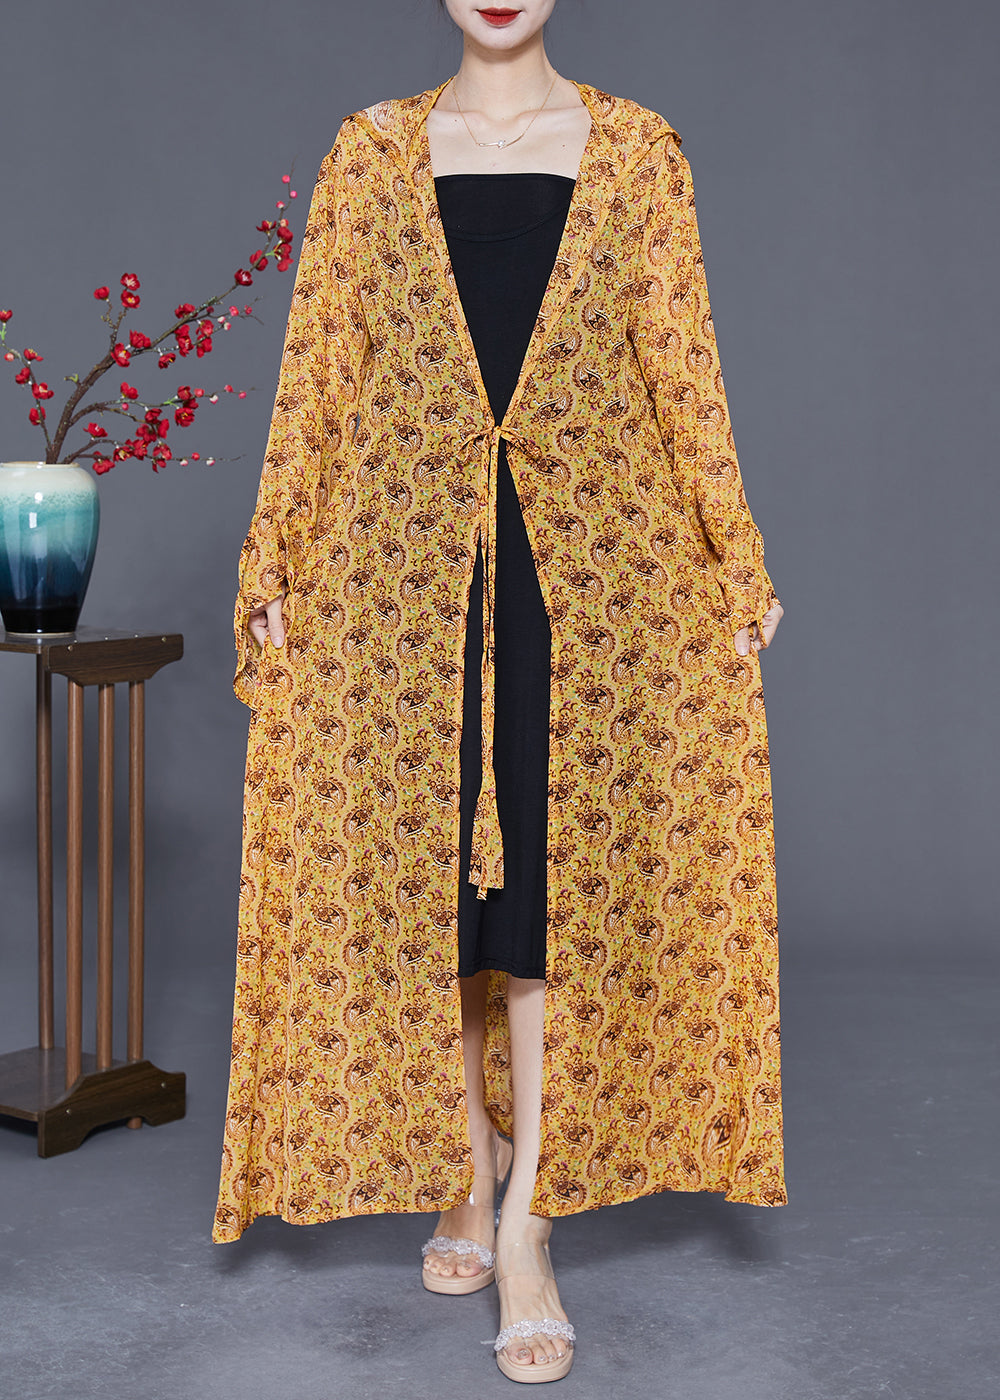 Plus Size Yellow Hooded Print Chiffon Long Cardigan Summer LY2402 - fabuloryshop